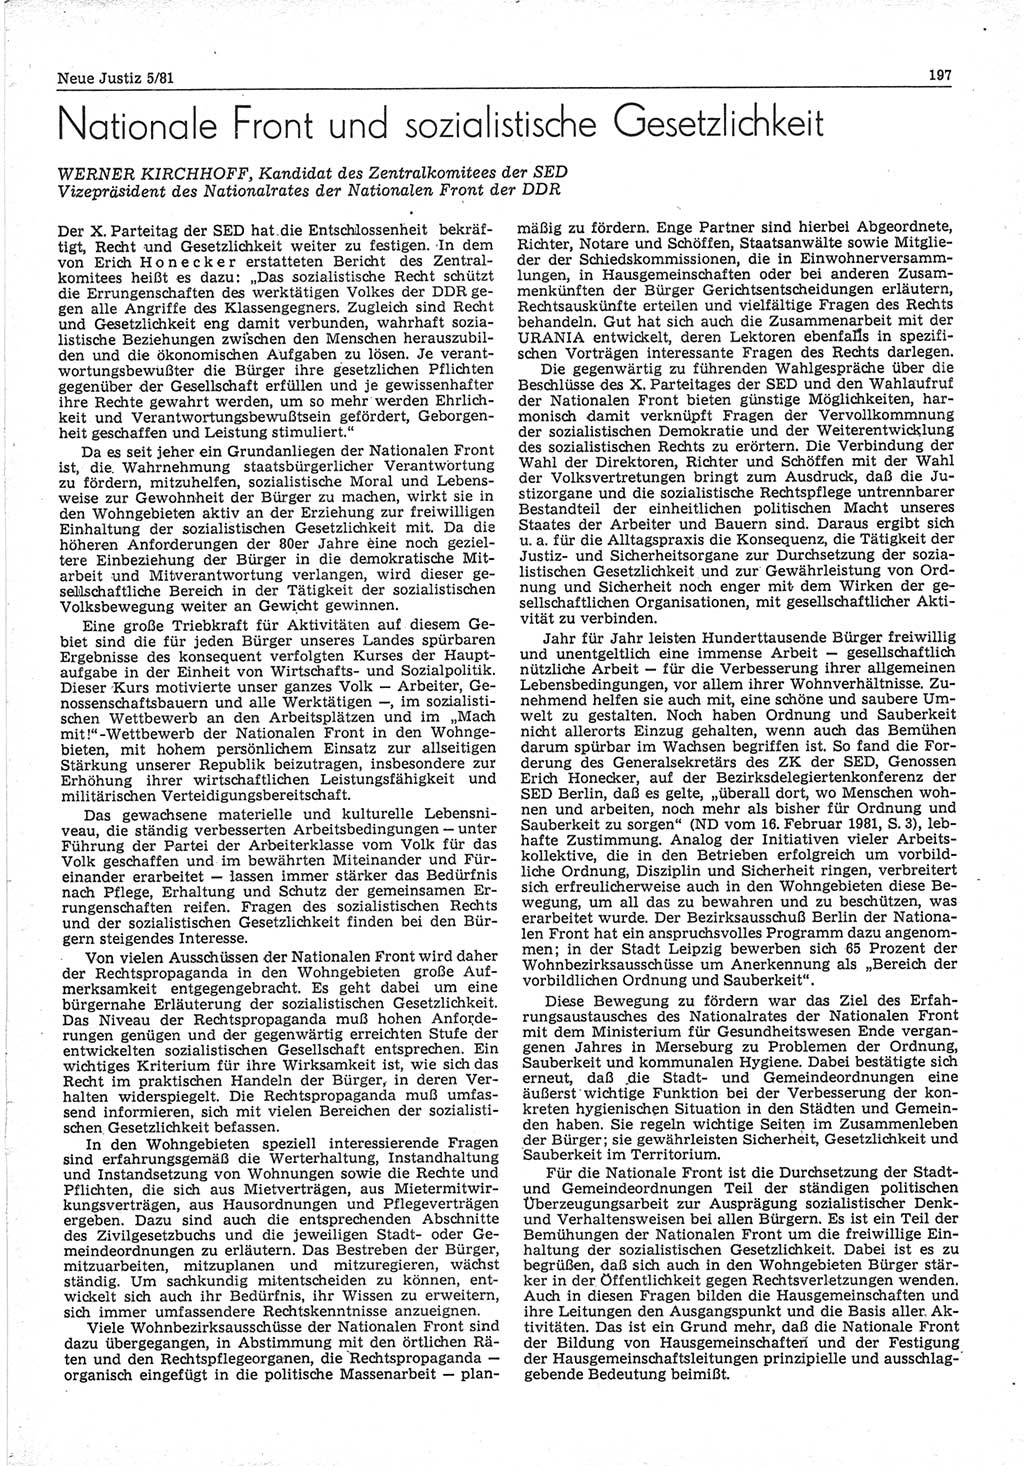 Neue Justiz (NJ), Zeitschrift für sozialistisches Recht und Gesetzlichkeit [Deutsche Demokratische Republik (DDR)], 35. Jahrgang 1981, Seite 197 (NJ DDR 1981, S. 197)